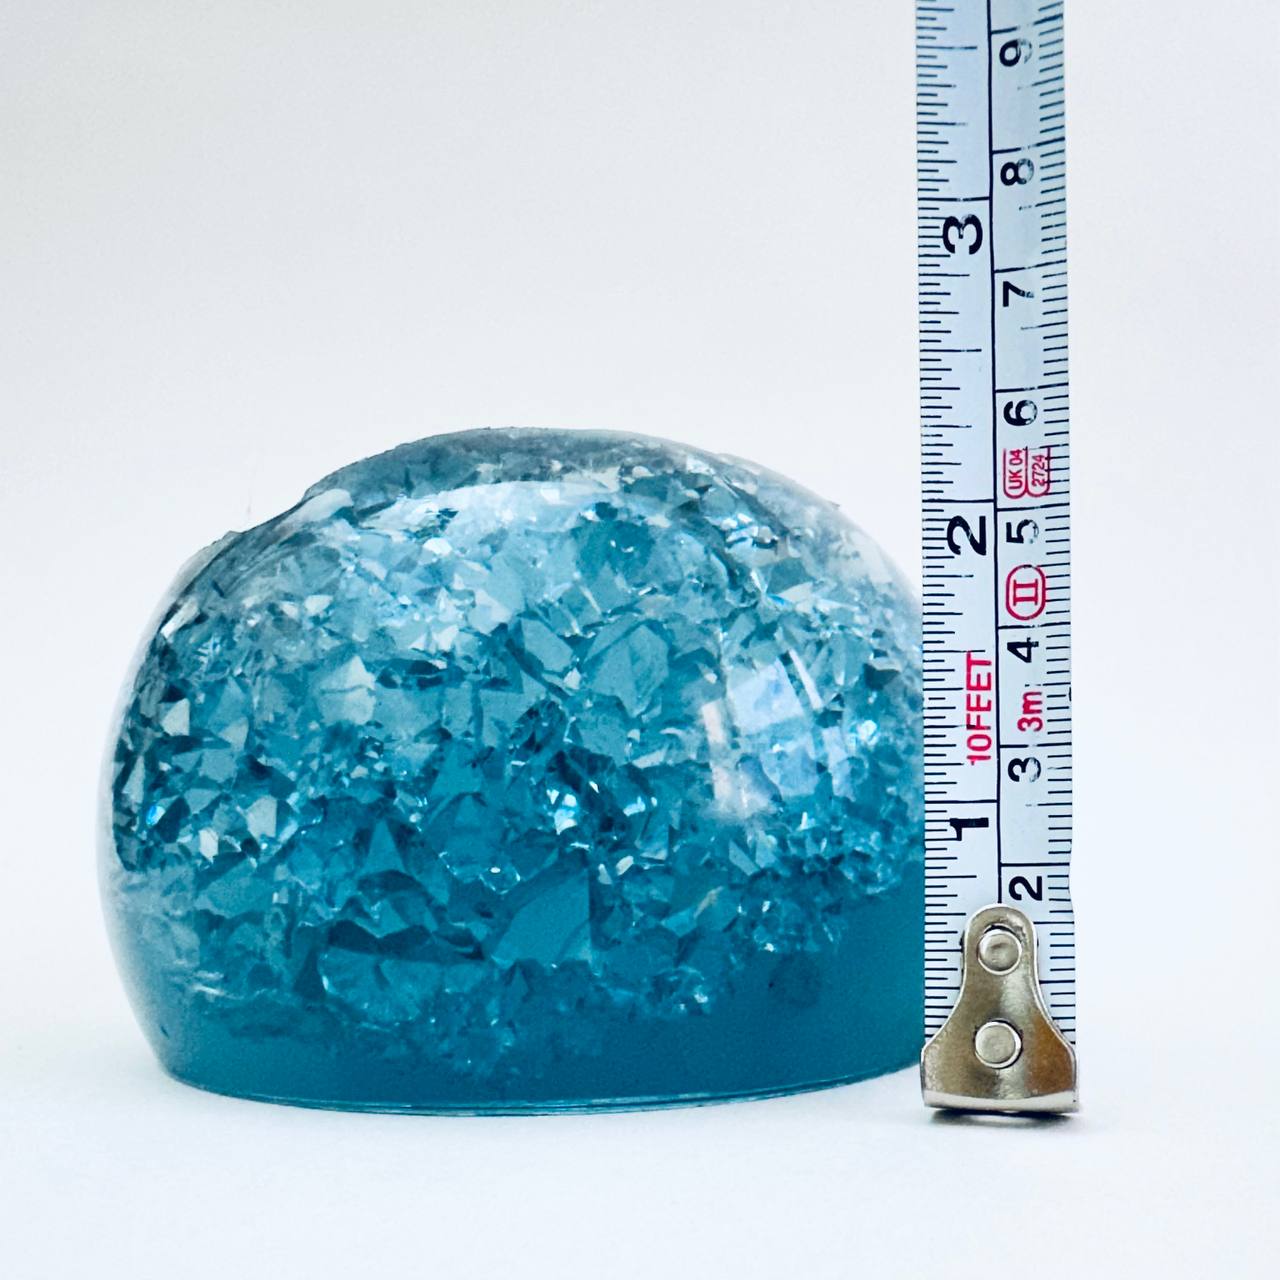 Handgefertigte Kristall-Geodenkugeln-Silikonform: Perfekt für Visitenkartenhalter oder Schmuckaufbewahrung